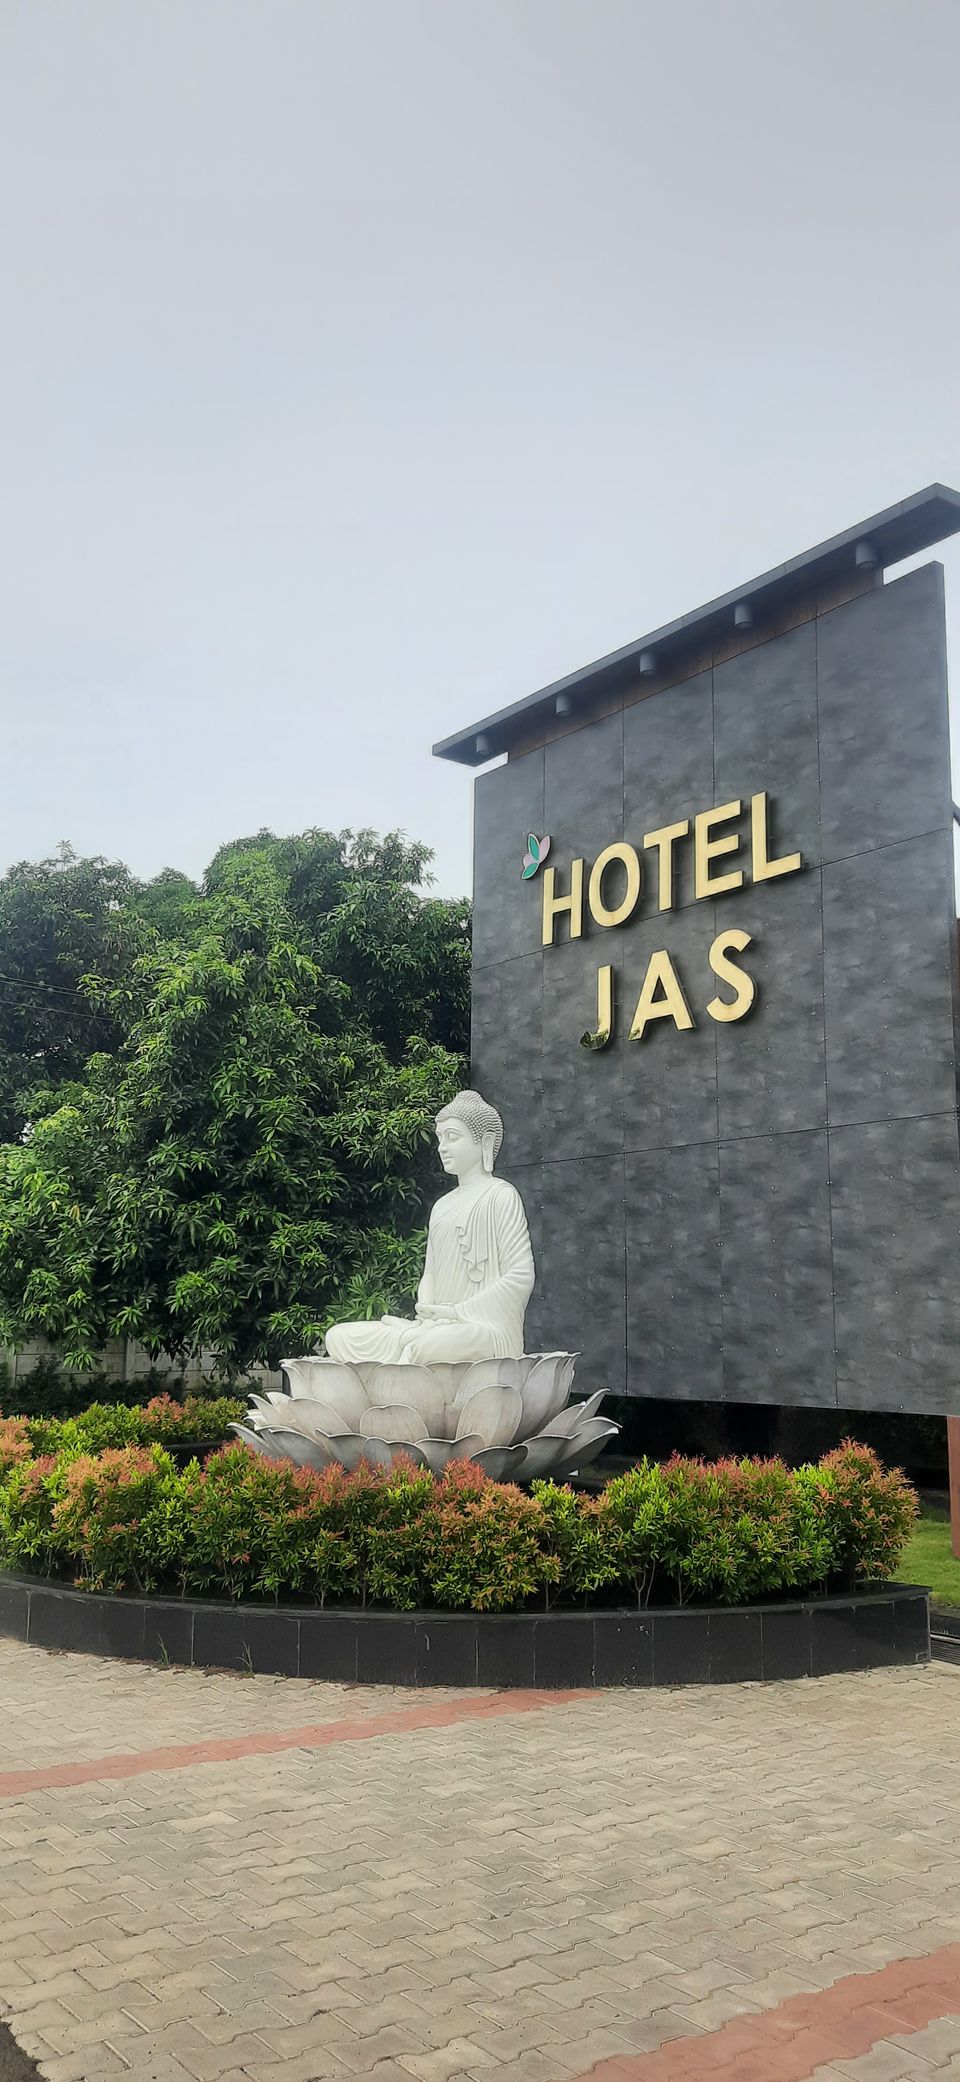 annavaram ap tourism hotels